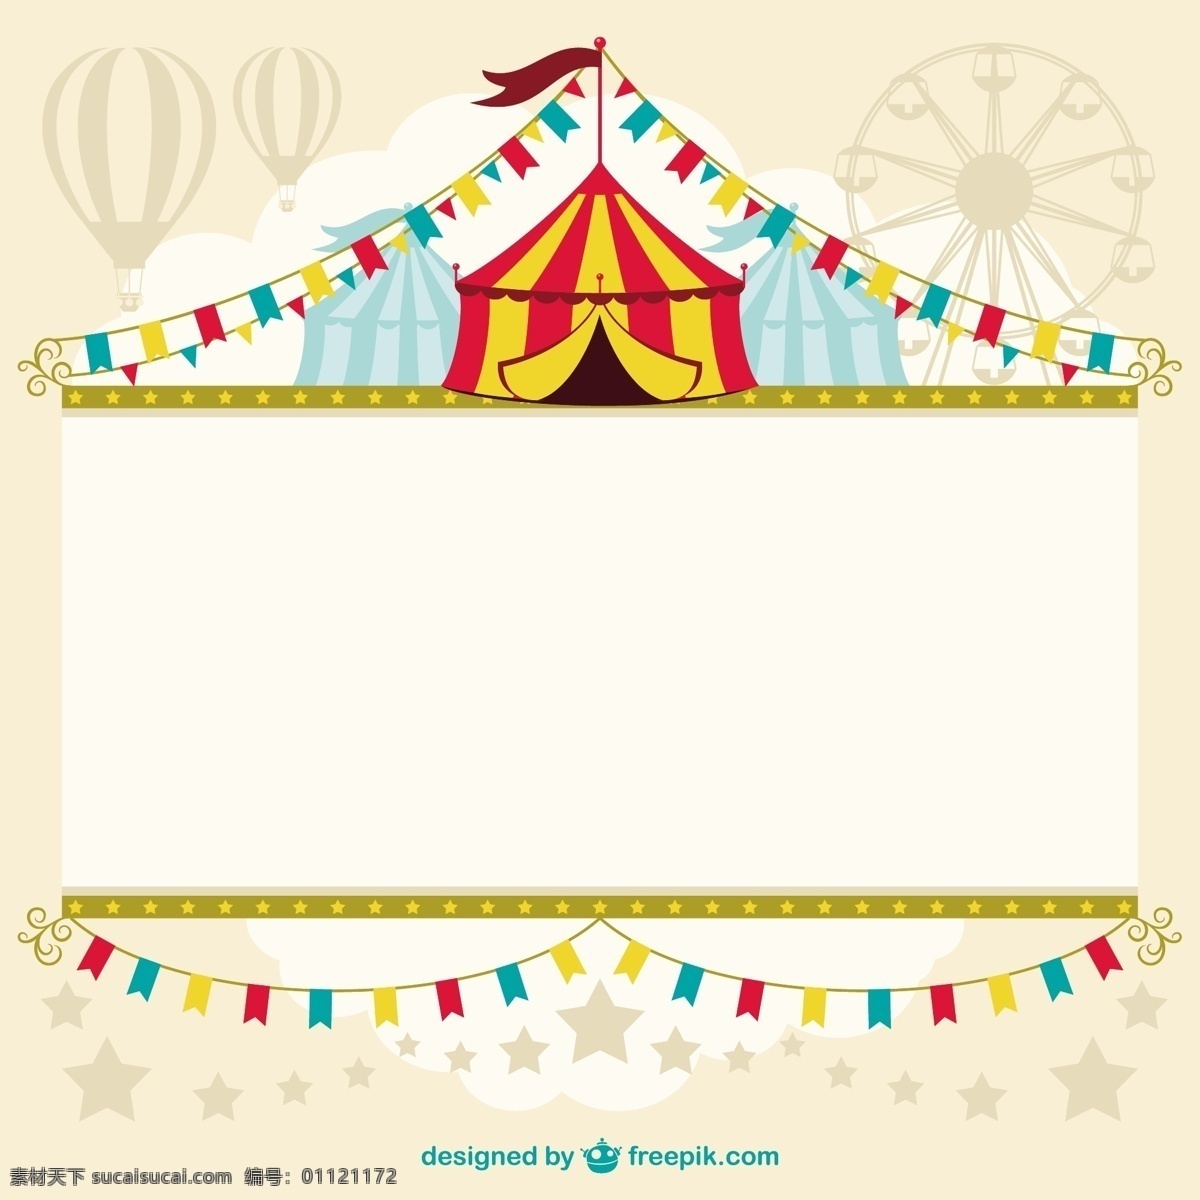 马戏团 帐篷 模板 旗帜 老式 海报 抽象 复古 节日 公园 条纹 元素 乐趣 装饰 经典 插图 展示 设计元素 白色